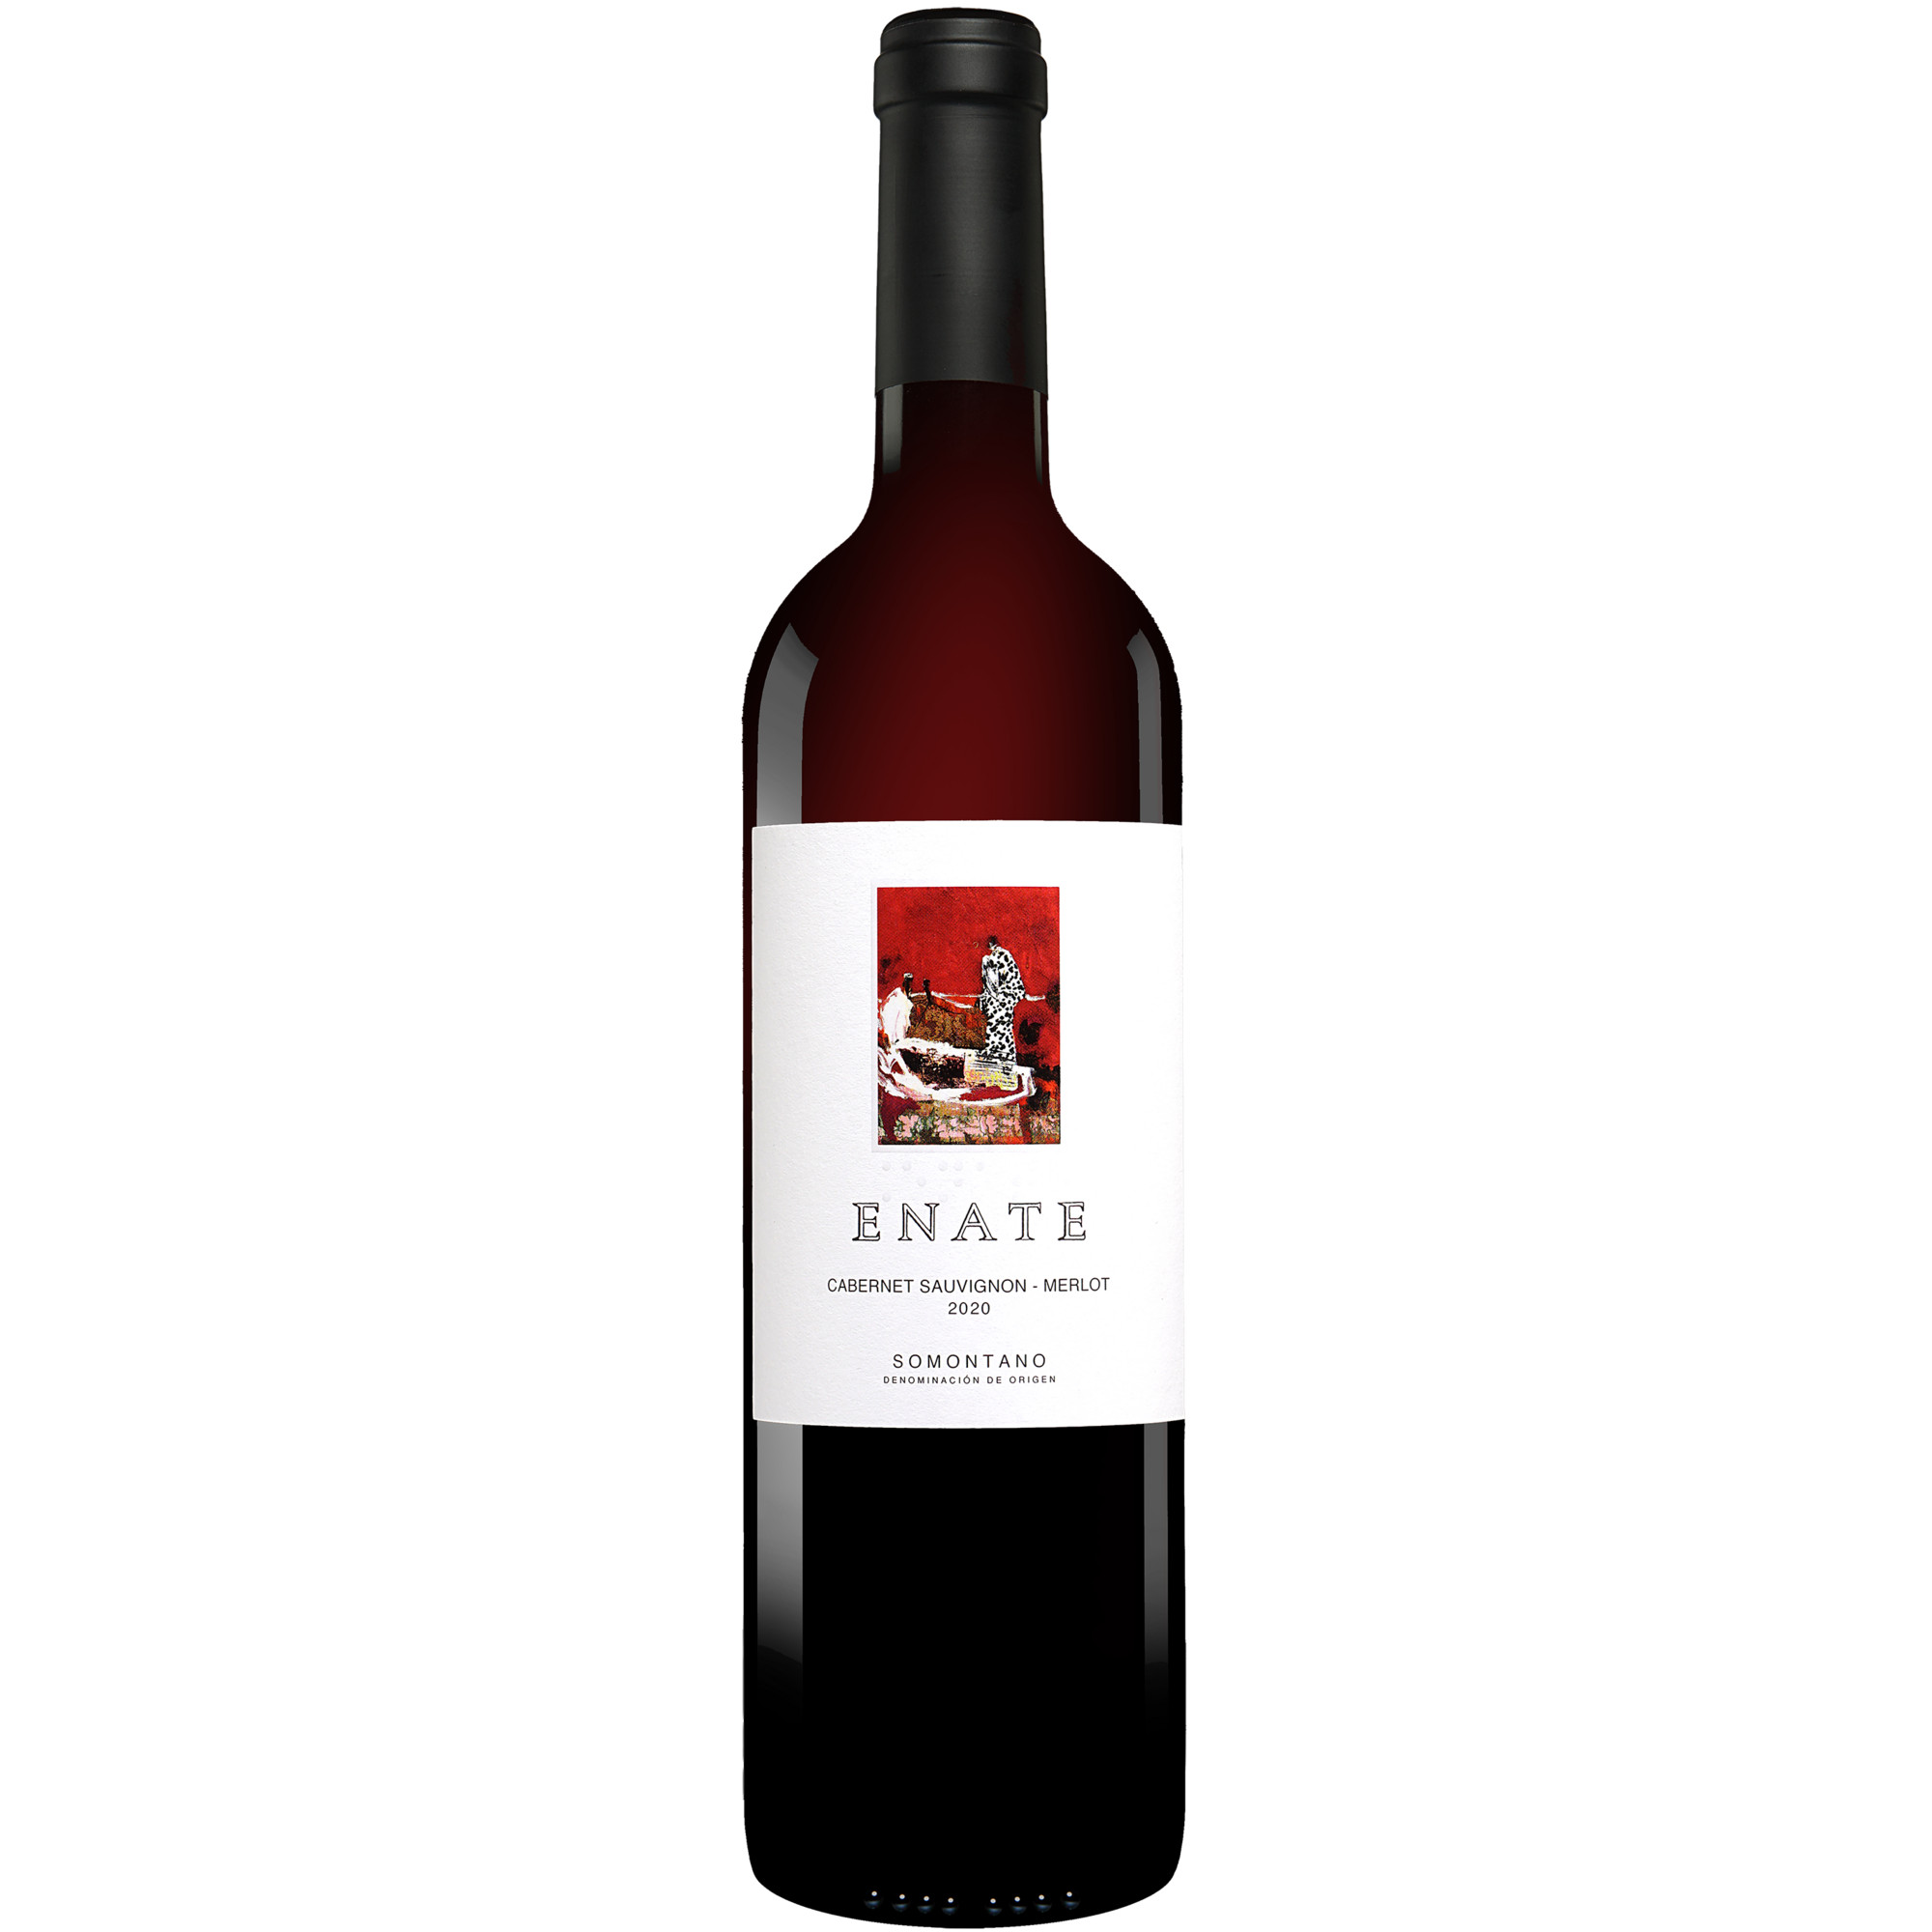 Enate Tinto Cabernet Sauvignon-Merlot 2020  015% Vol. Rotwein Trocken aus Spanien